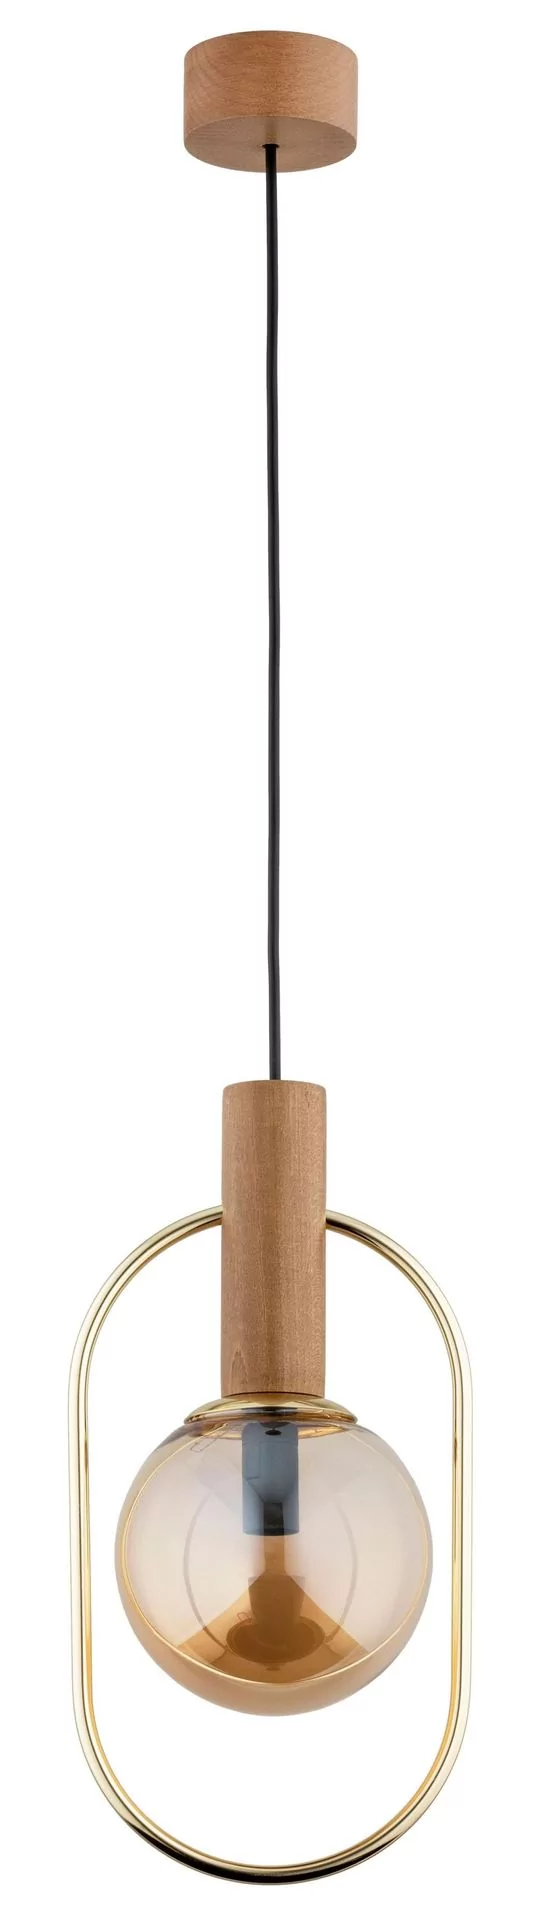 Drewniana, dekoracyjna lampa wisząca z kloszem AL 61153 z serii MUFI